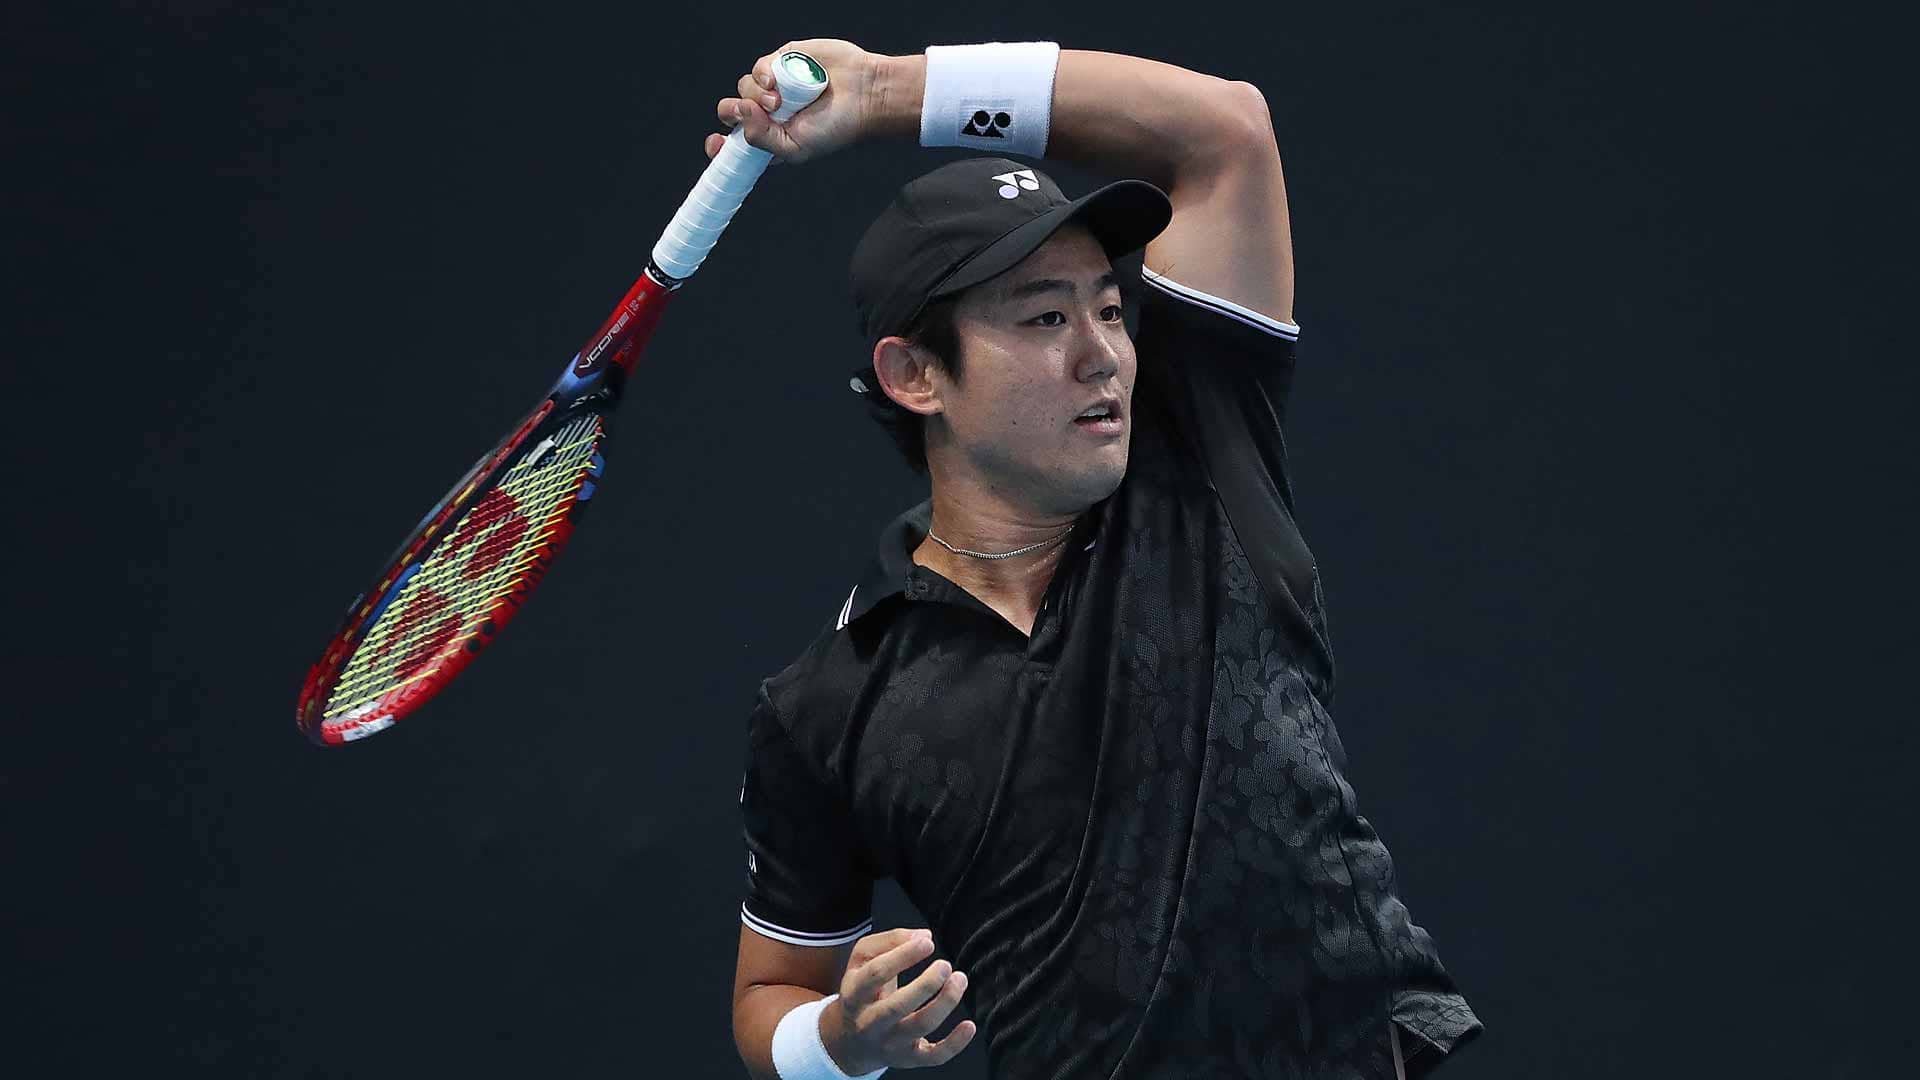 Inside The Yoshihito Nishioka Renaissance ATP Tour Tennis